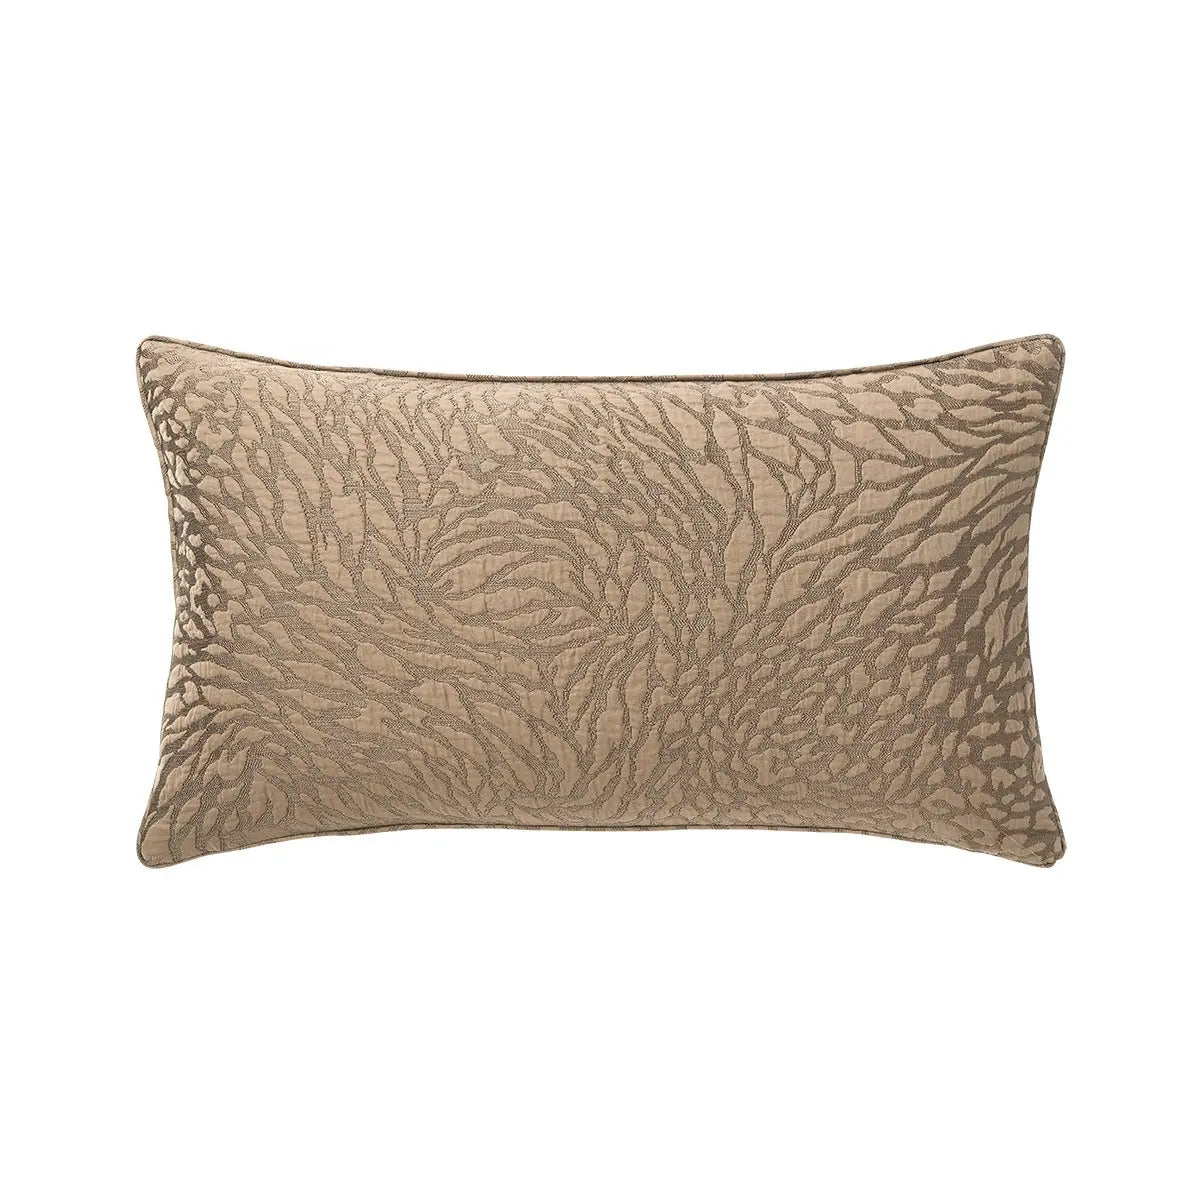 Yves Delorme Souvenir Decorative Pillow in Mordore